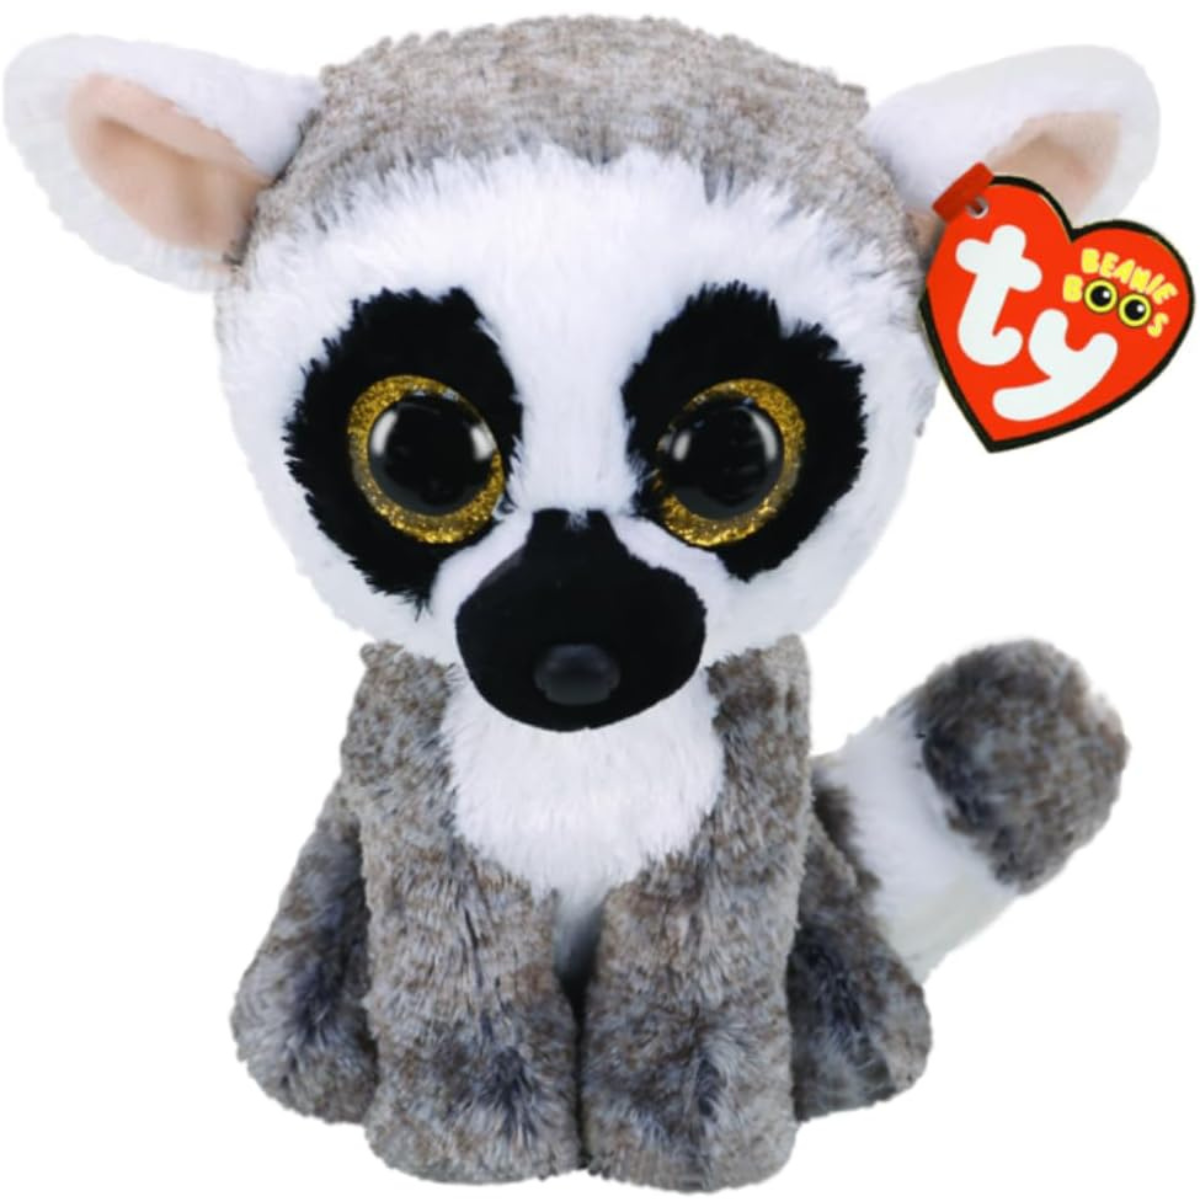 Ty - peluche - beanie boos - lemure - linus - grigio e bianco - occhi dorati grandi e glitter - il pupazzo con gli occhi grandi scintillanti - 15 cm - 36224 - TY